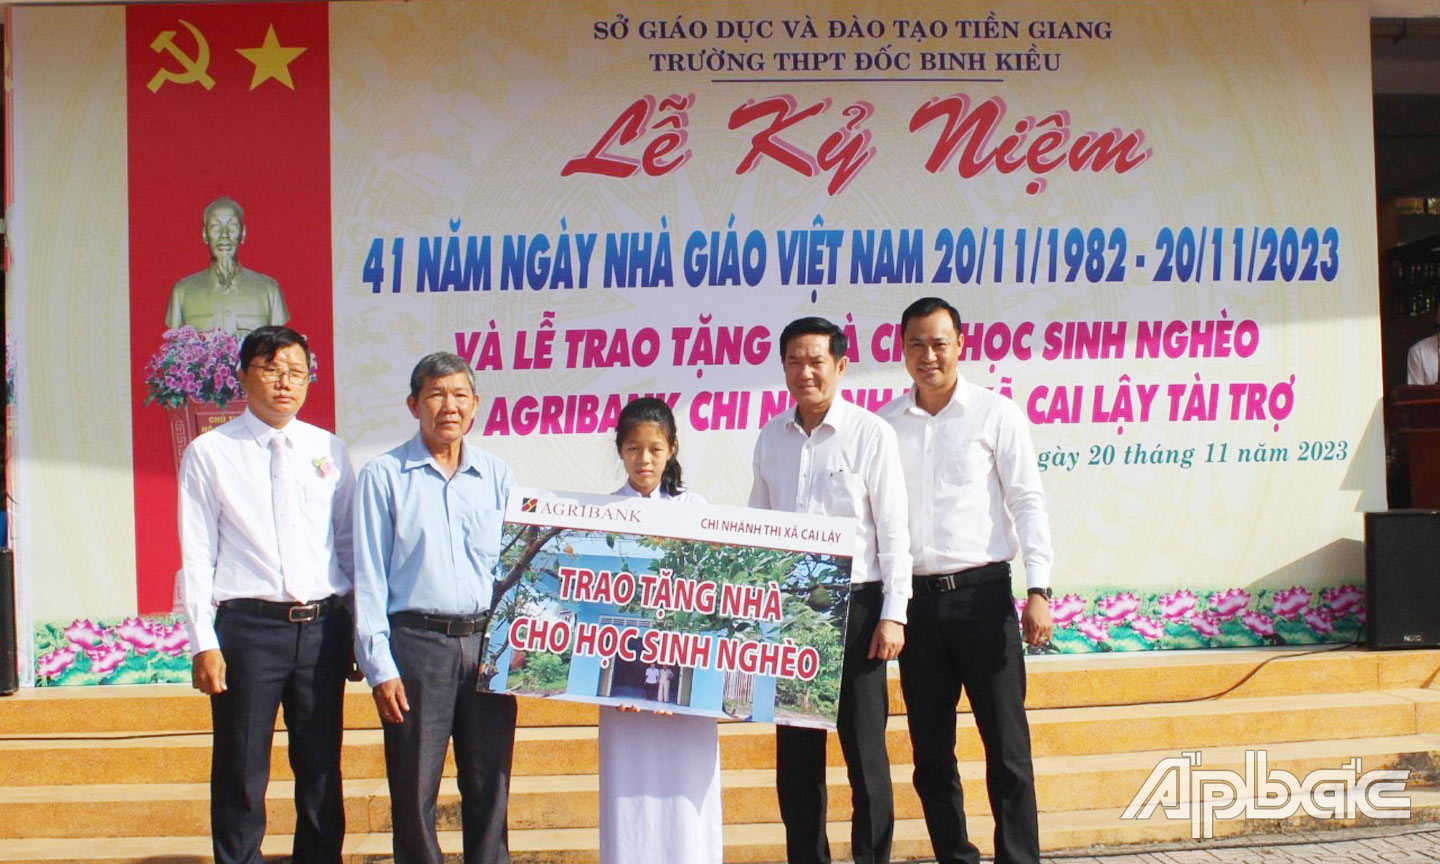 Ông Trương Văn Đoàn, Phó Giám đốc Agribank chi nhánh tỉnh Tiền Giang trao bảng tượng trưng cho em Nguyễn Thị Ngọc Yến với sự chứng kiến của lãnh đạo Ủy ban MTTQ TX. Cai Lậy, cùng lãnh đạo nhà trường.  